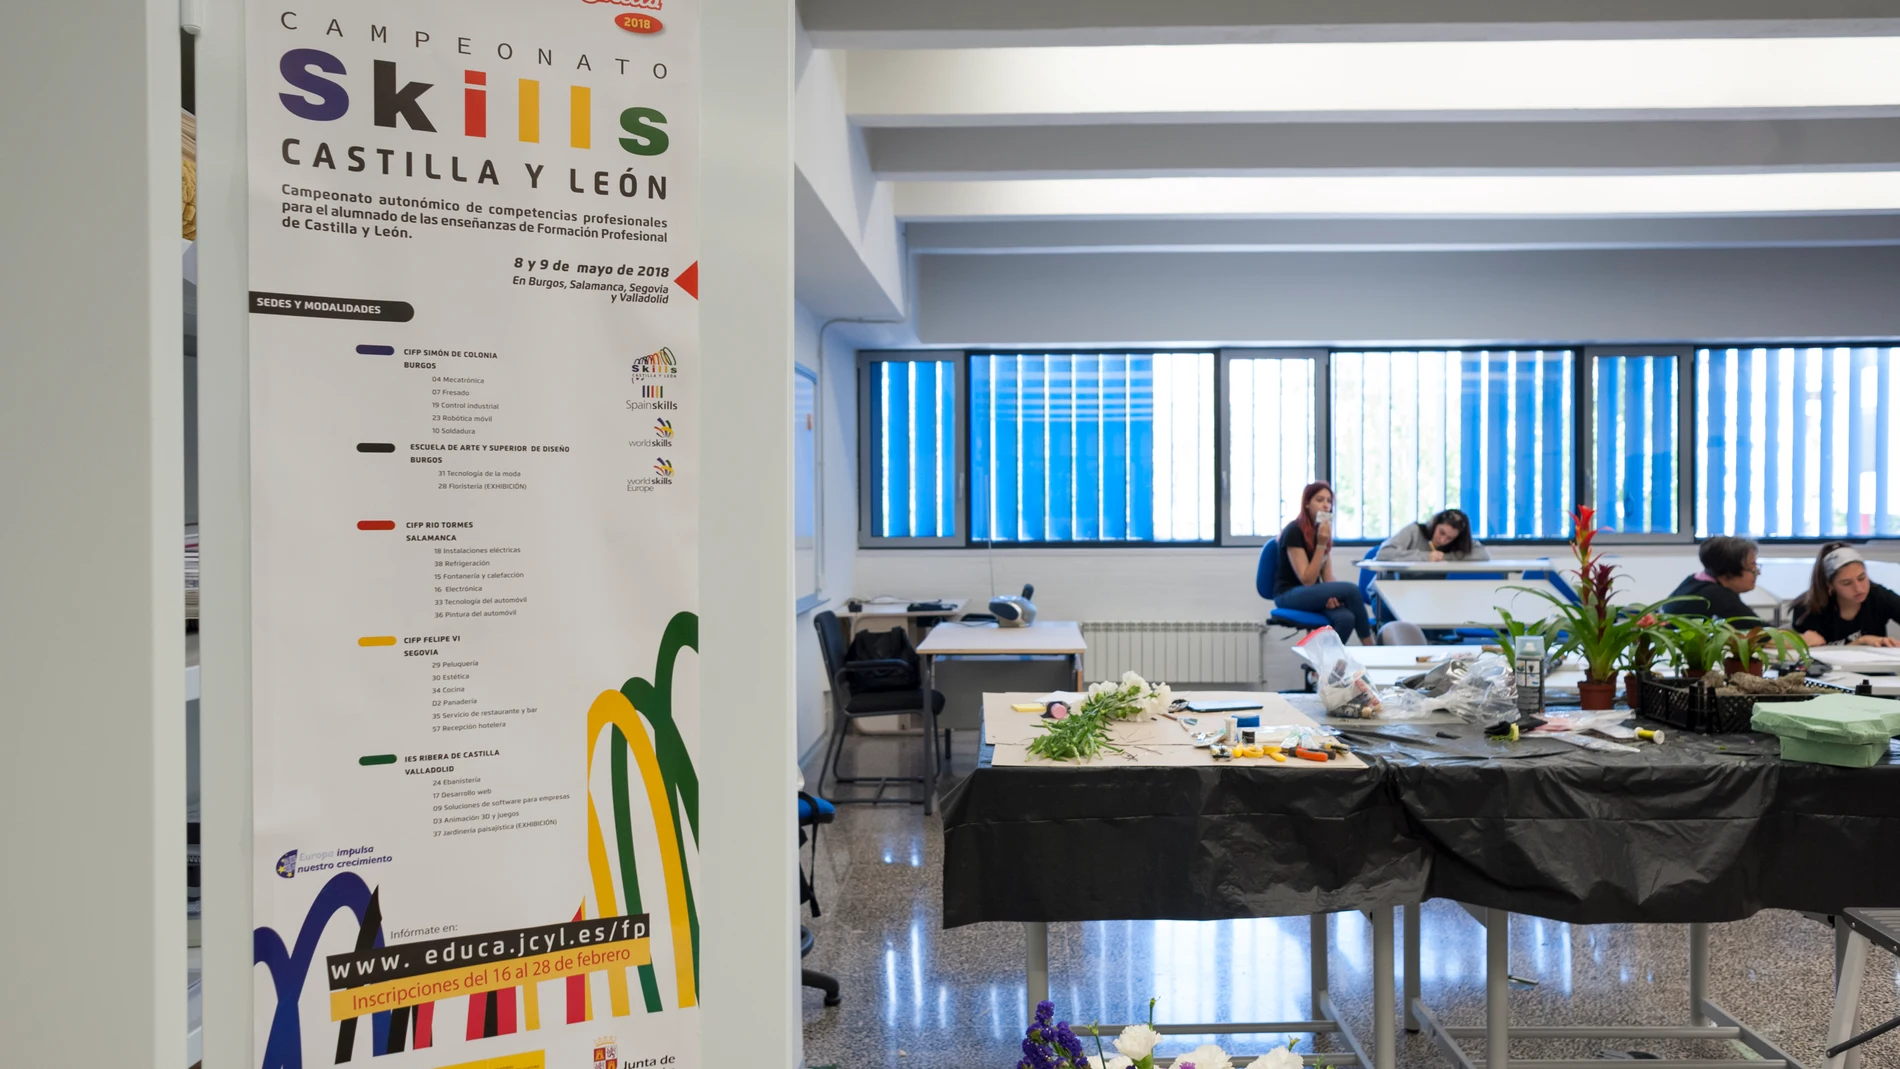 Campeonato de Skills en Castilla y León de una anterior edición